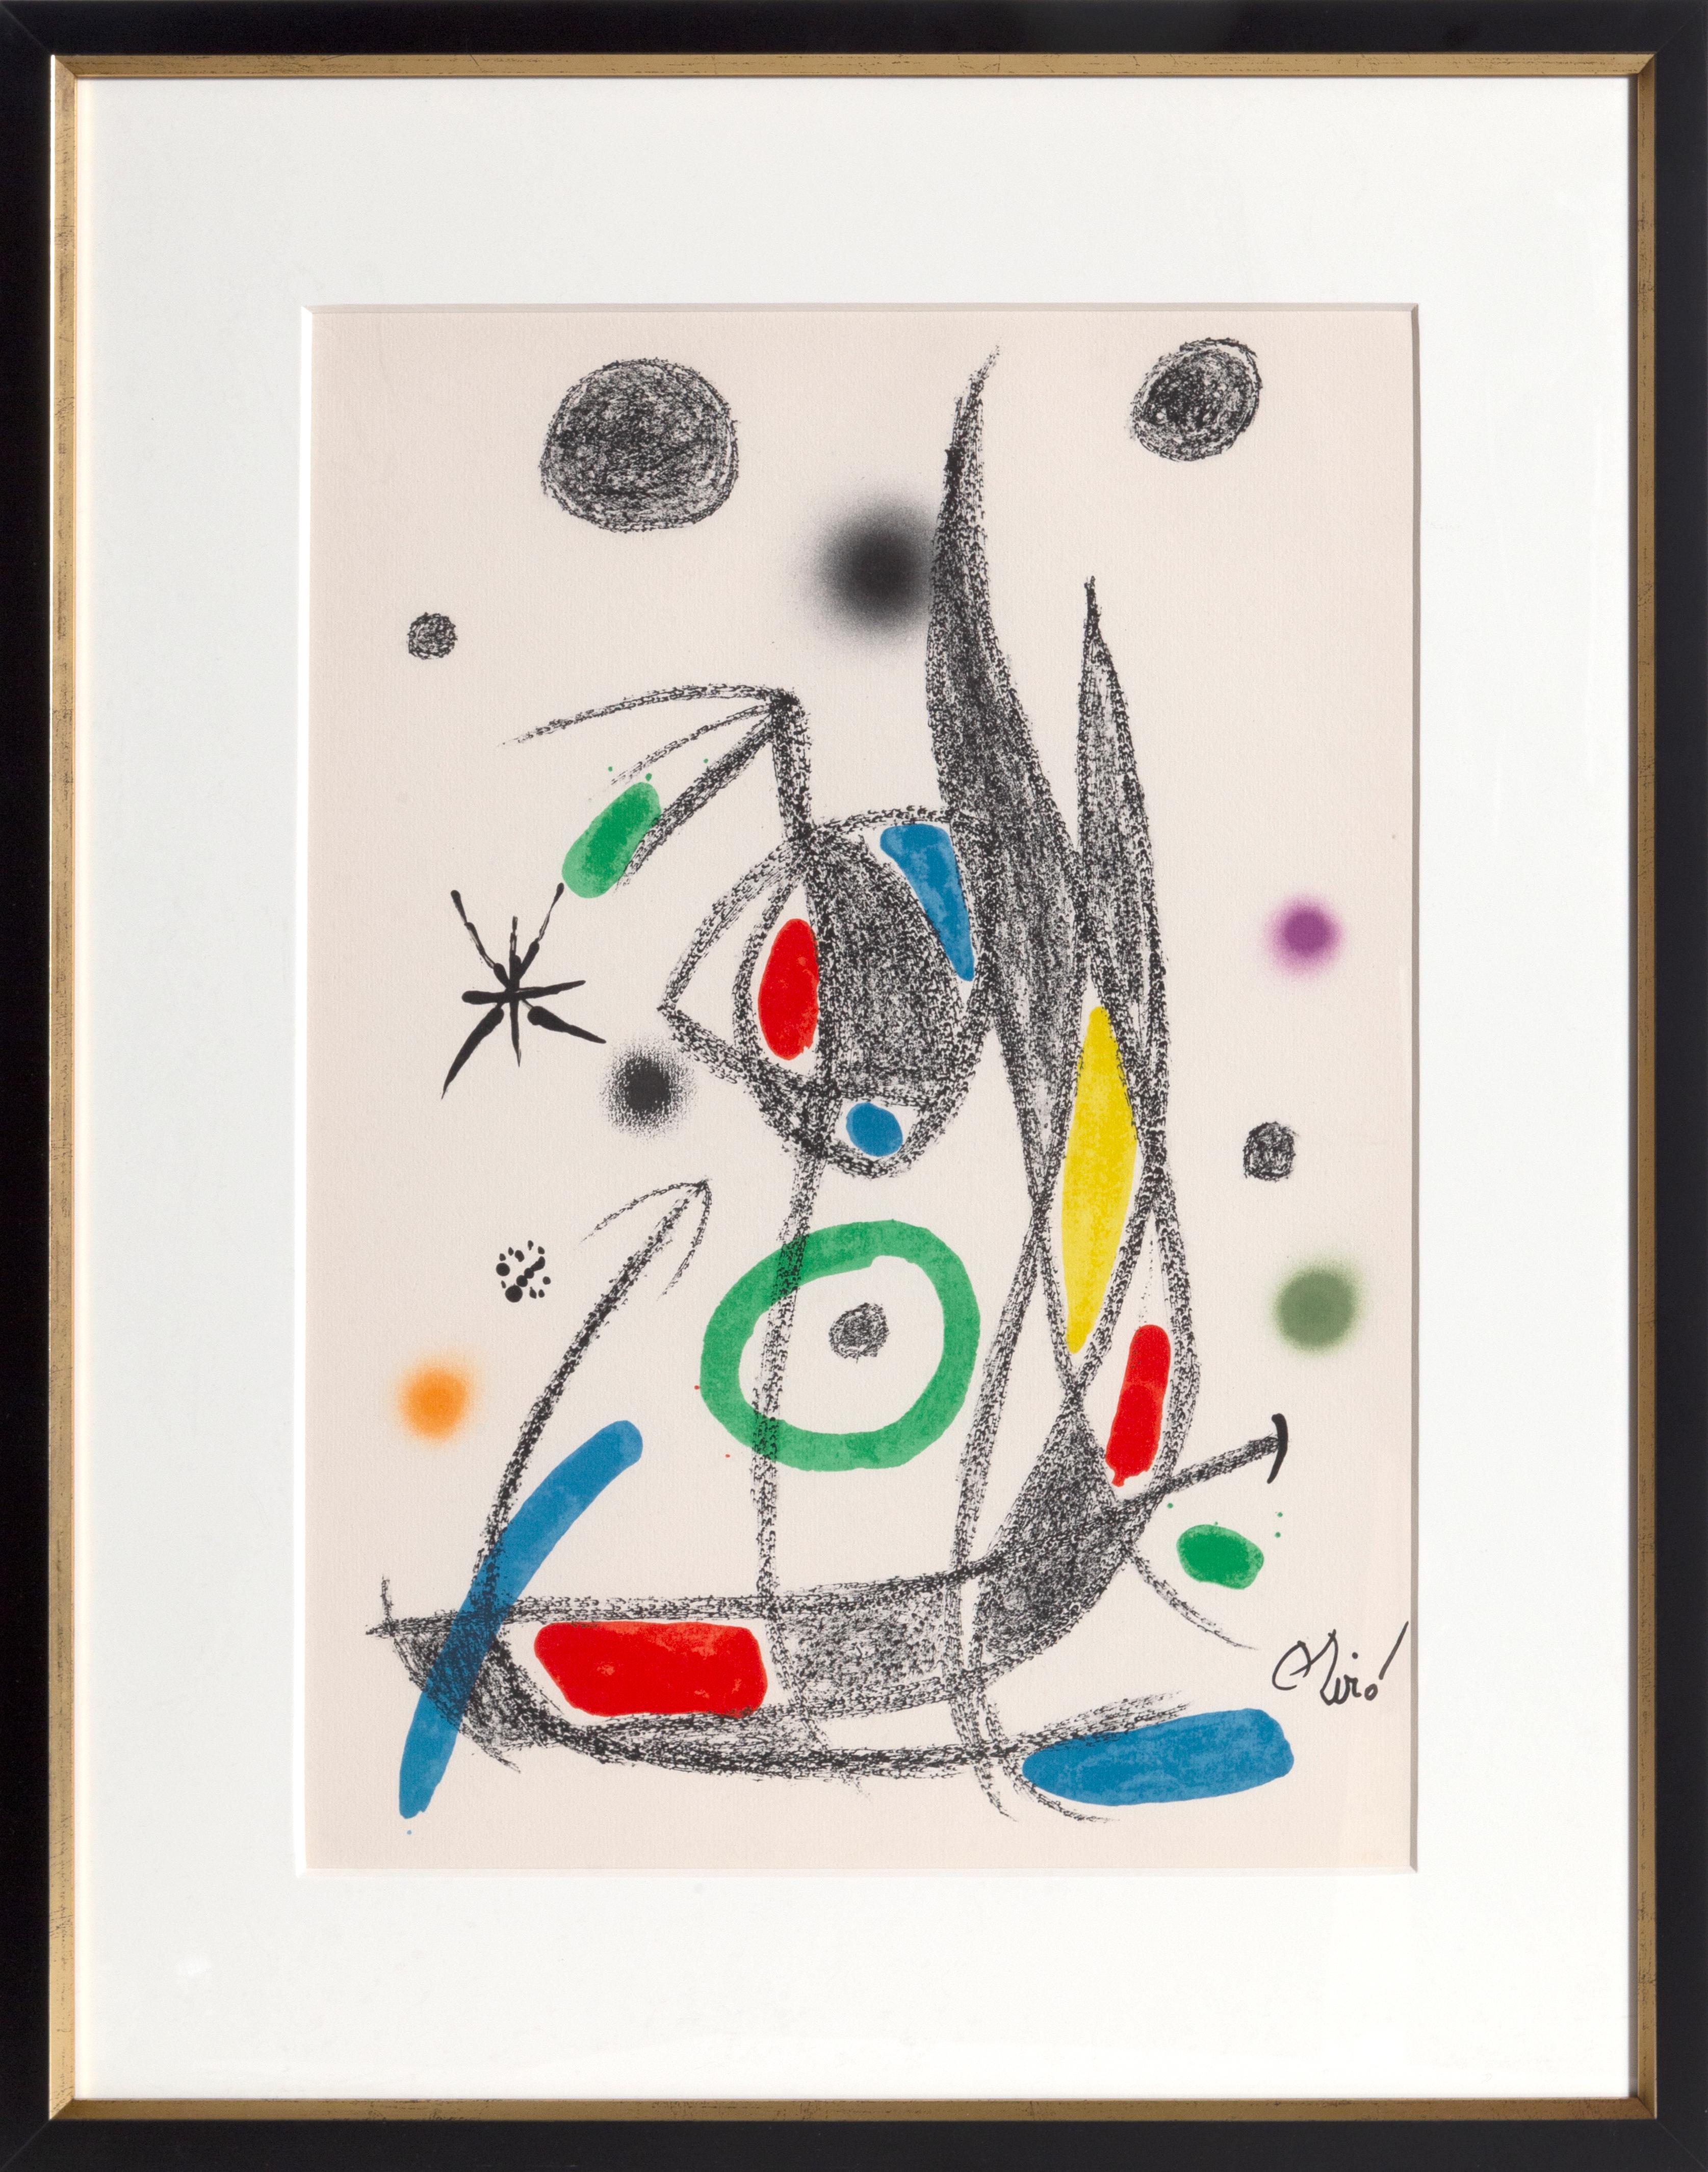 Joan Miró Abstract Print - Maravillas con Variaciones Acrosticas en el Jardin de Miro (Number 16)